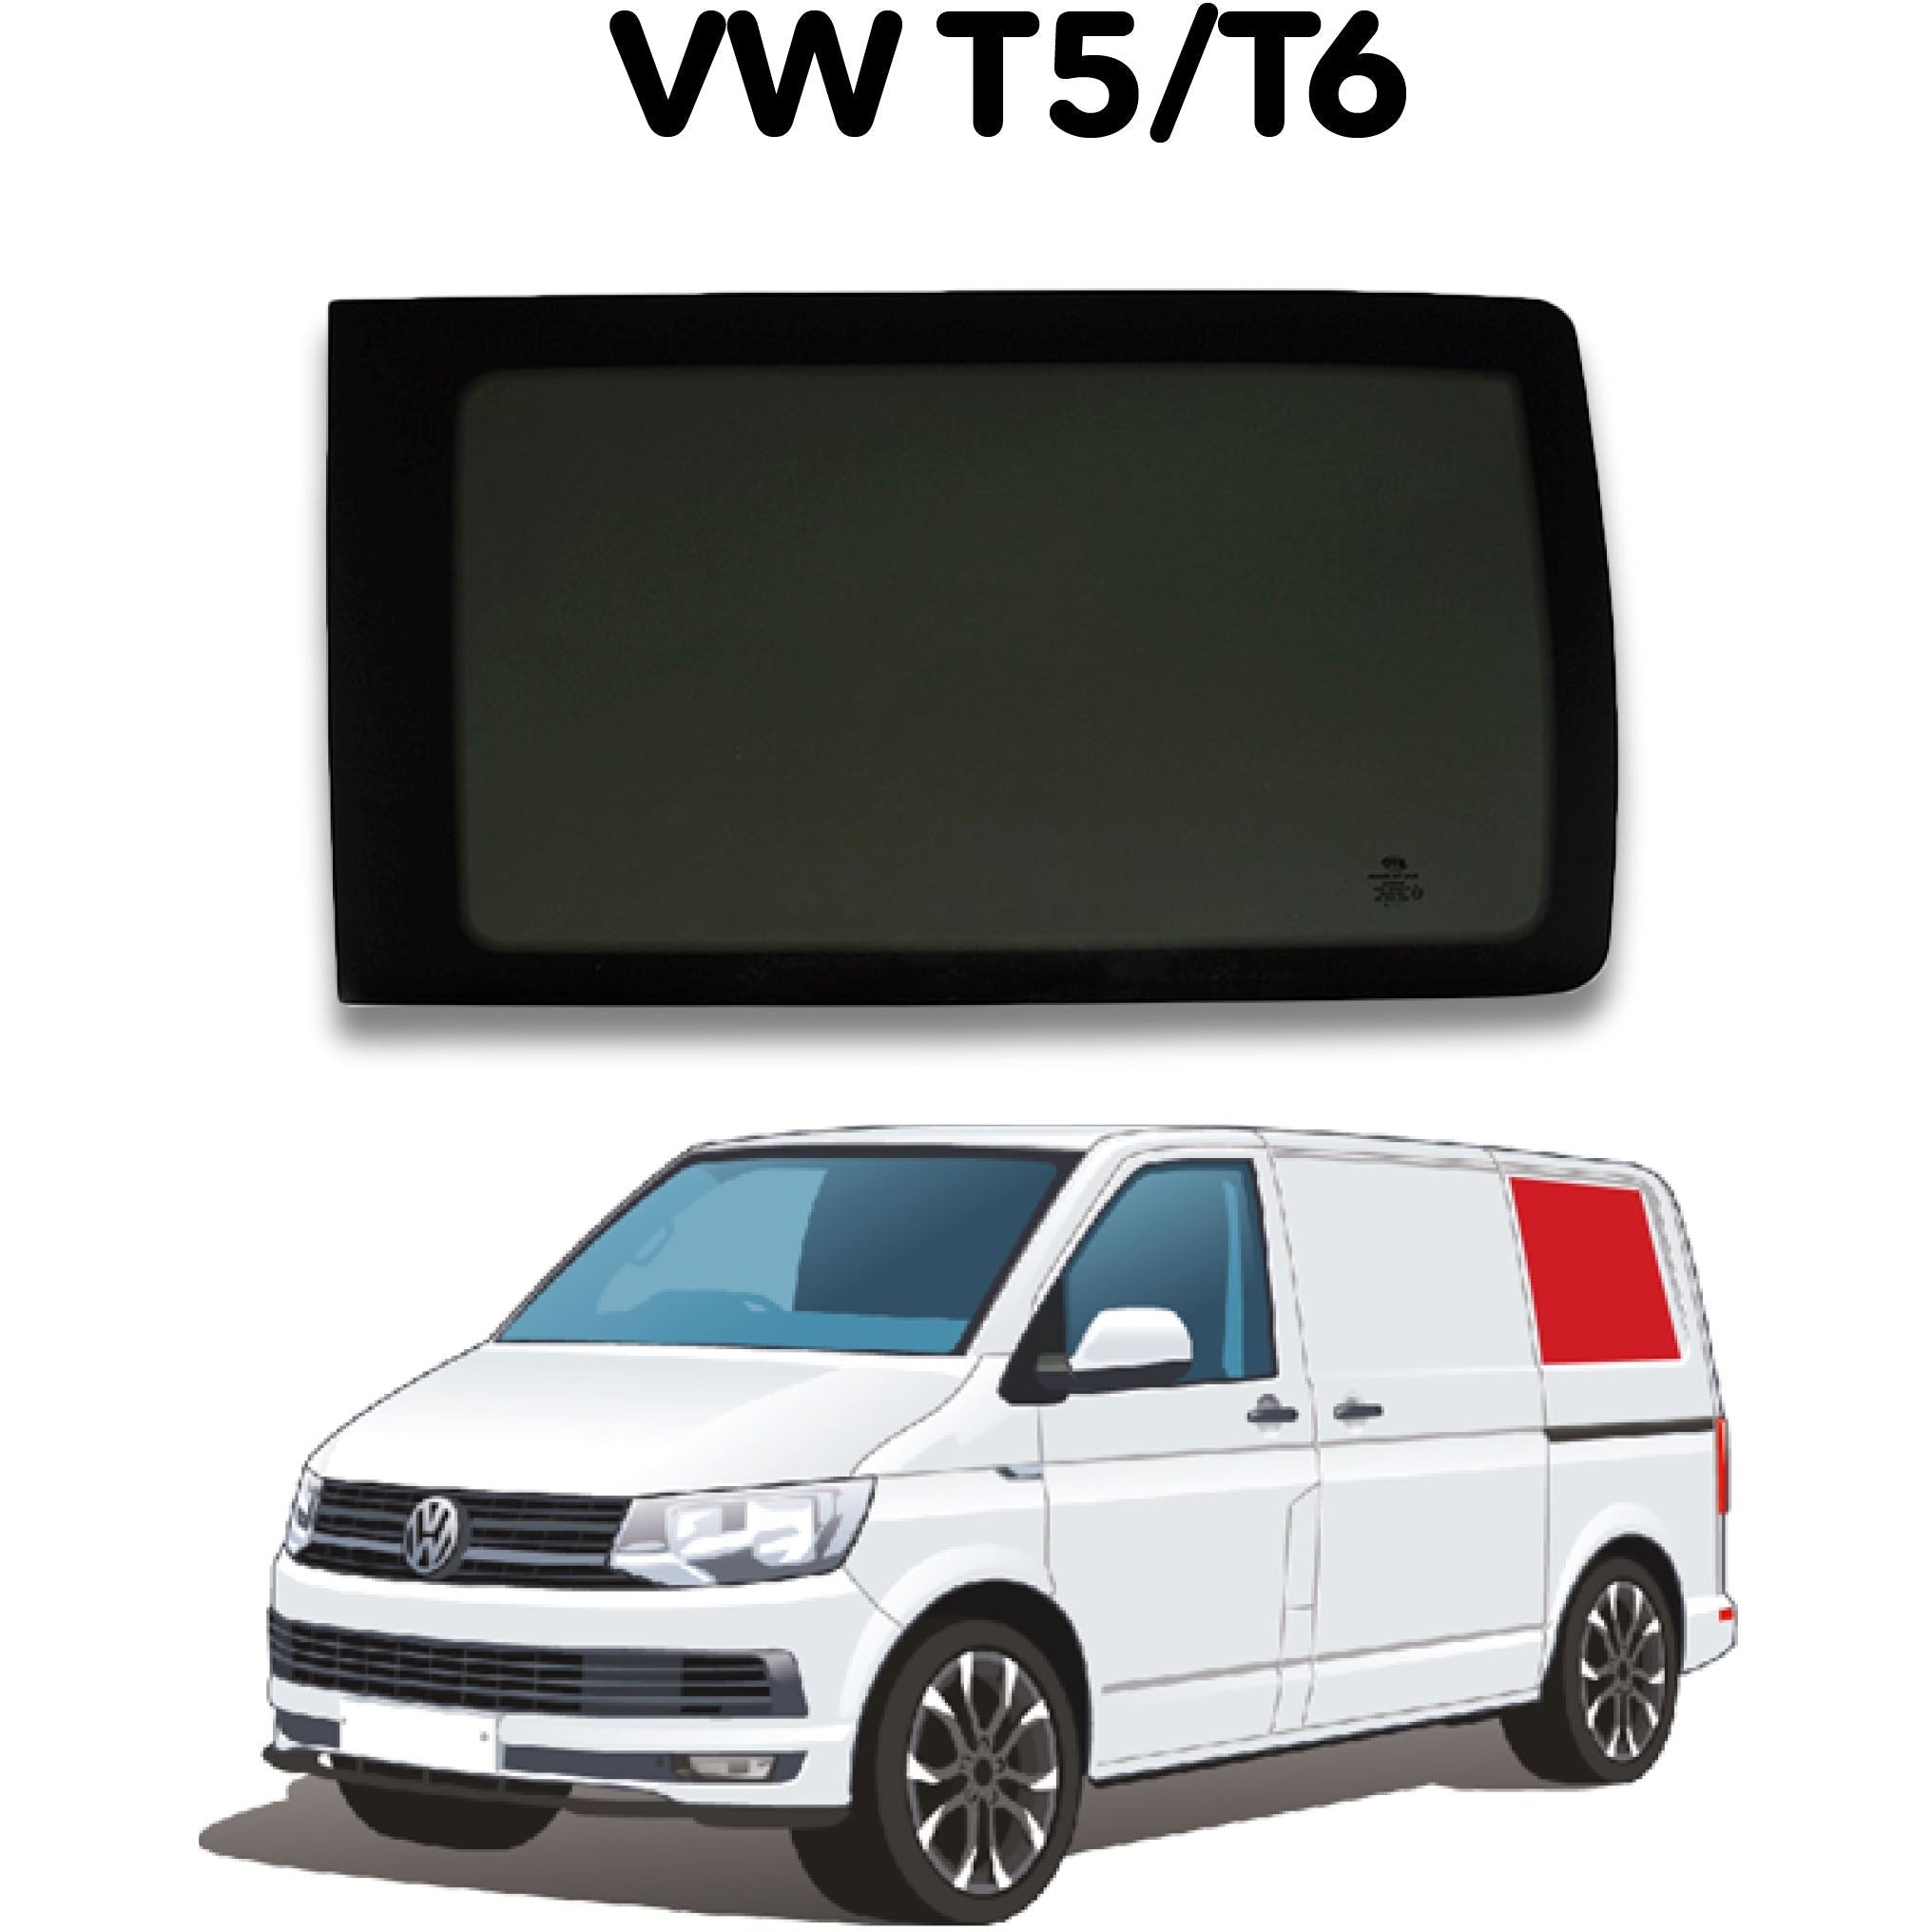 Left Rear Quarter Window VW T5 / T6 Camper Glass by Kiravans 